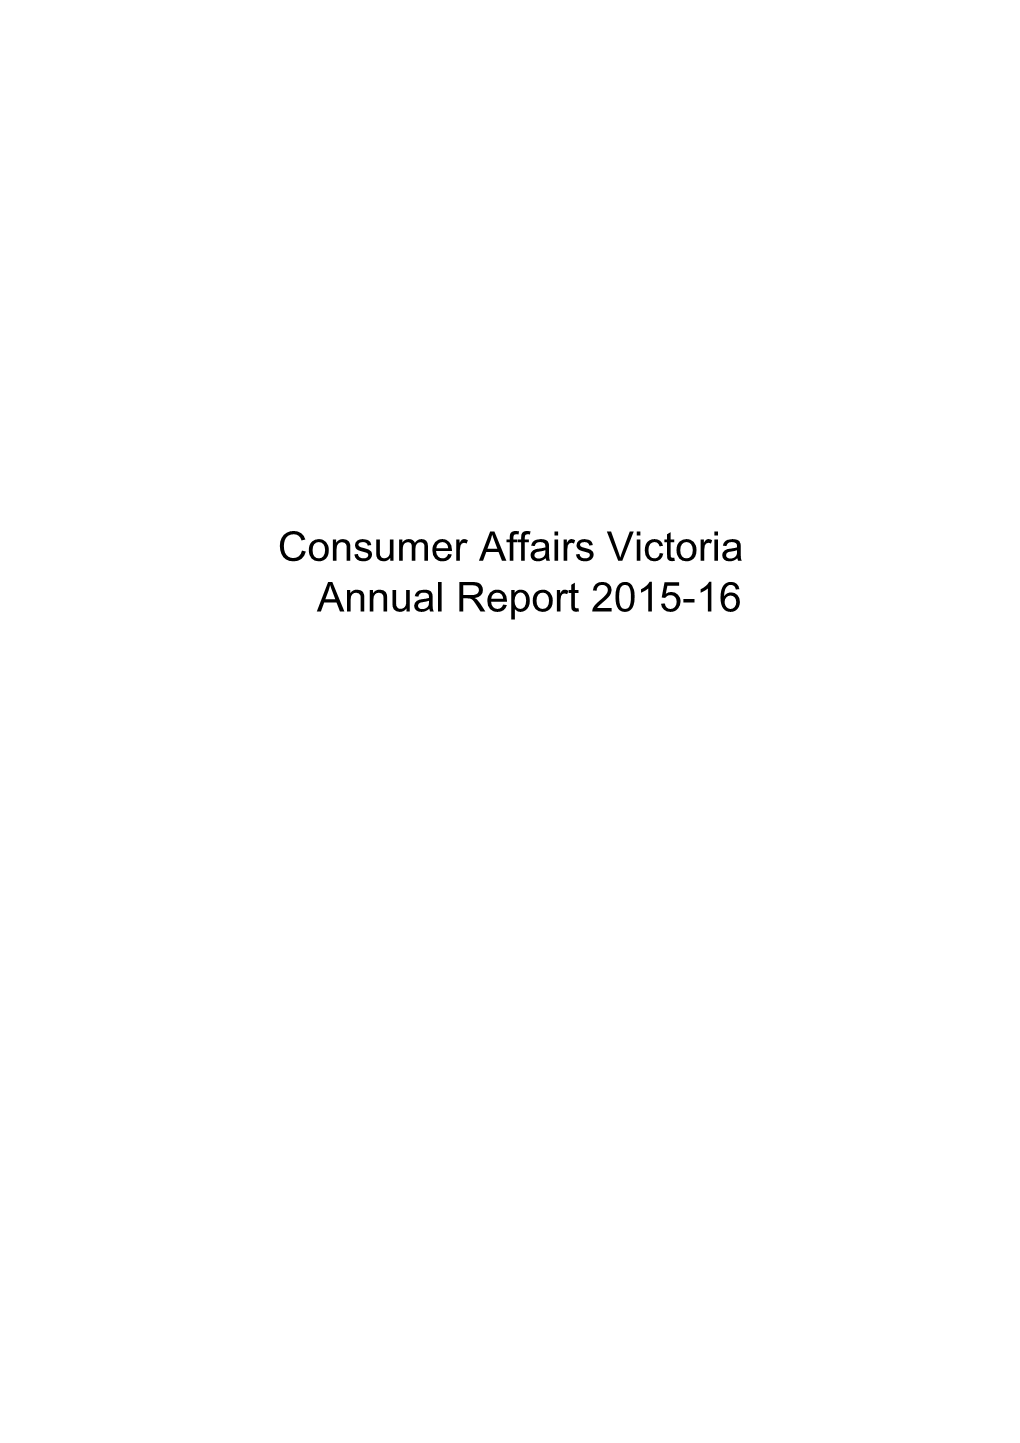 Consumer Affairs Victoria Annual Report 2015-16